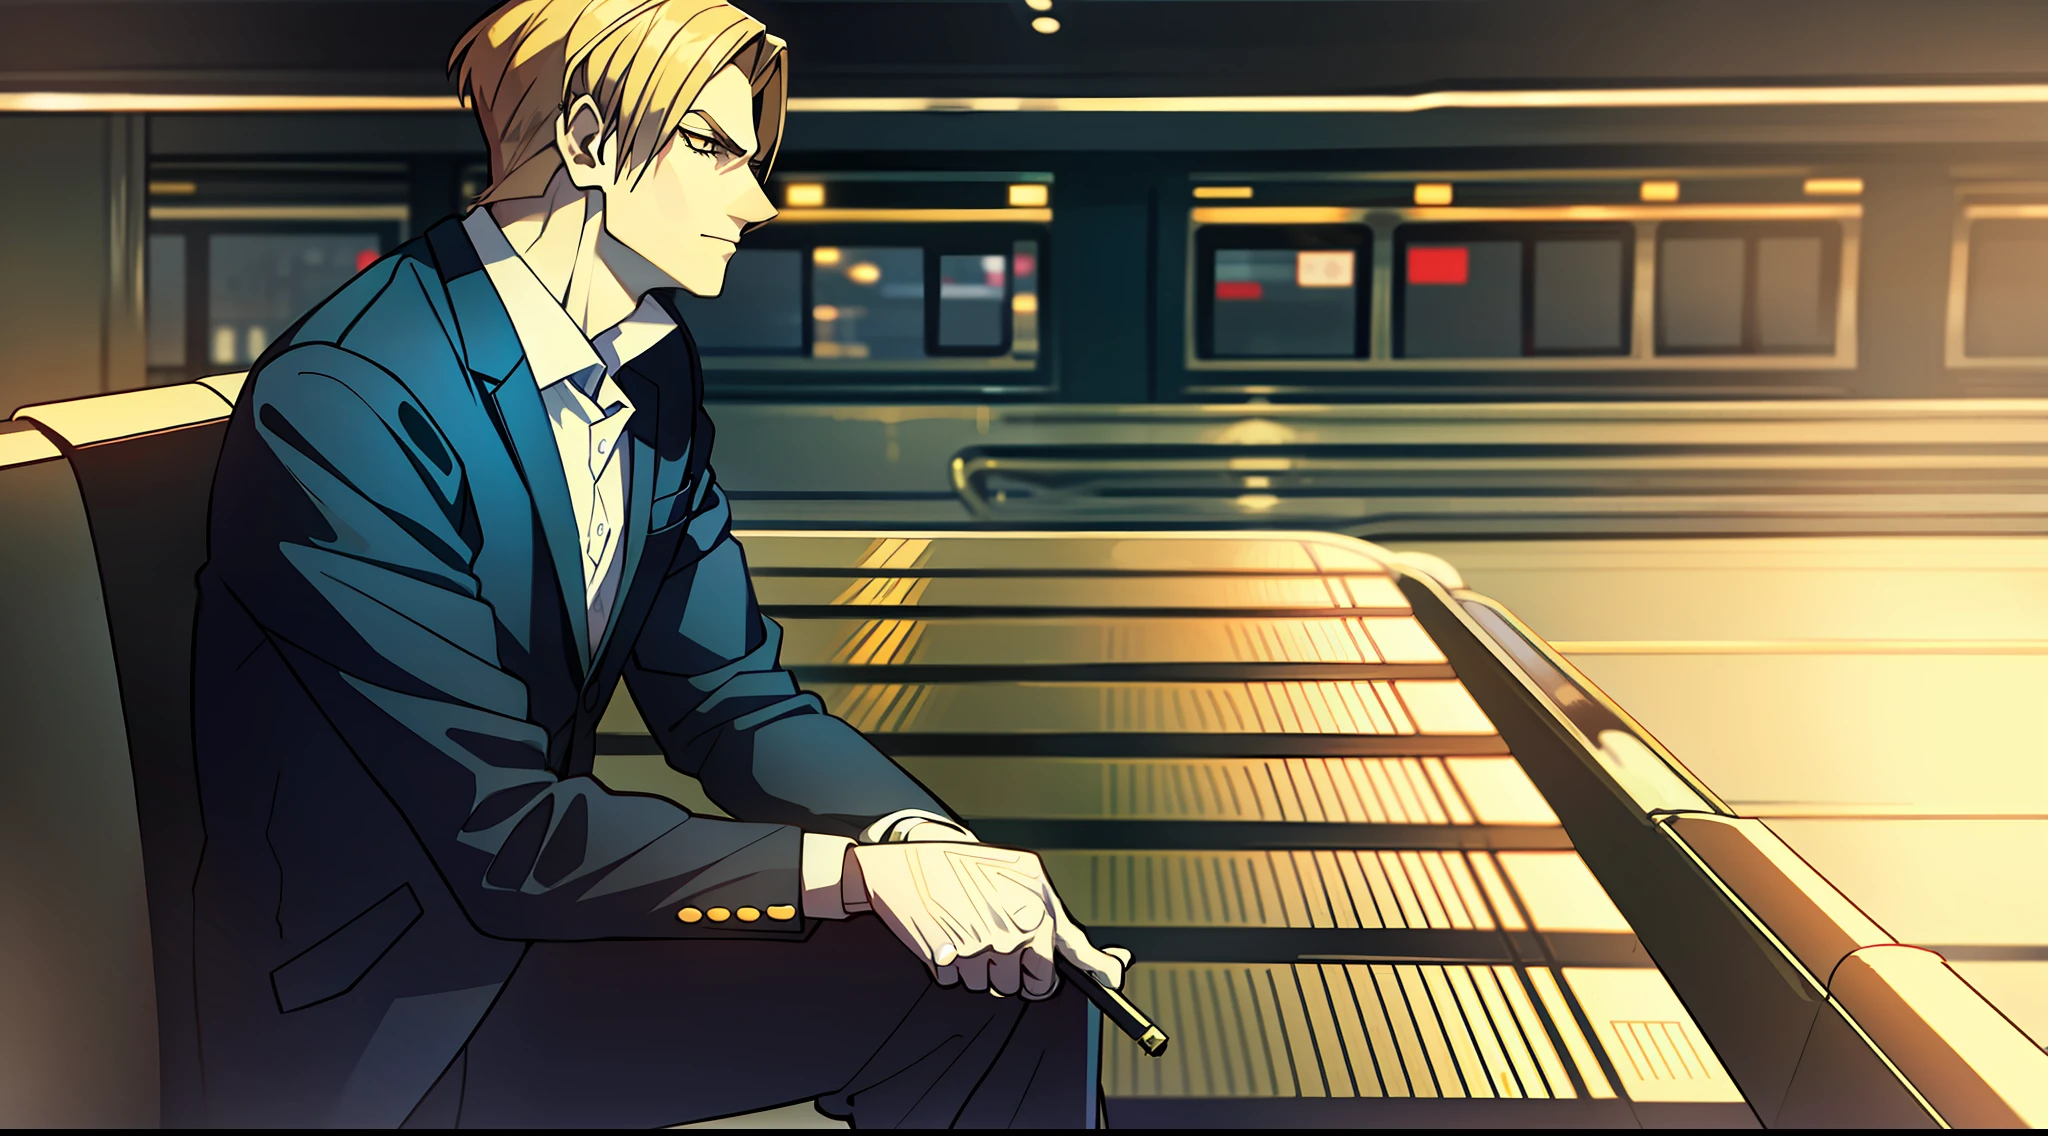 "Dio, vistiendo un traje y fumando un cigarrillo, sentado con las piernas cruzadas, un rostro atractivo en un escenario en blanco y negro en la estación de tren."